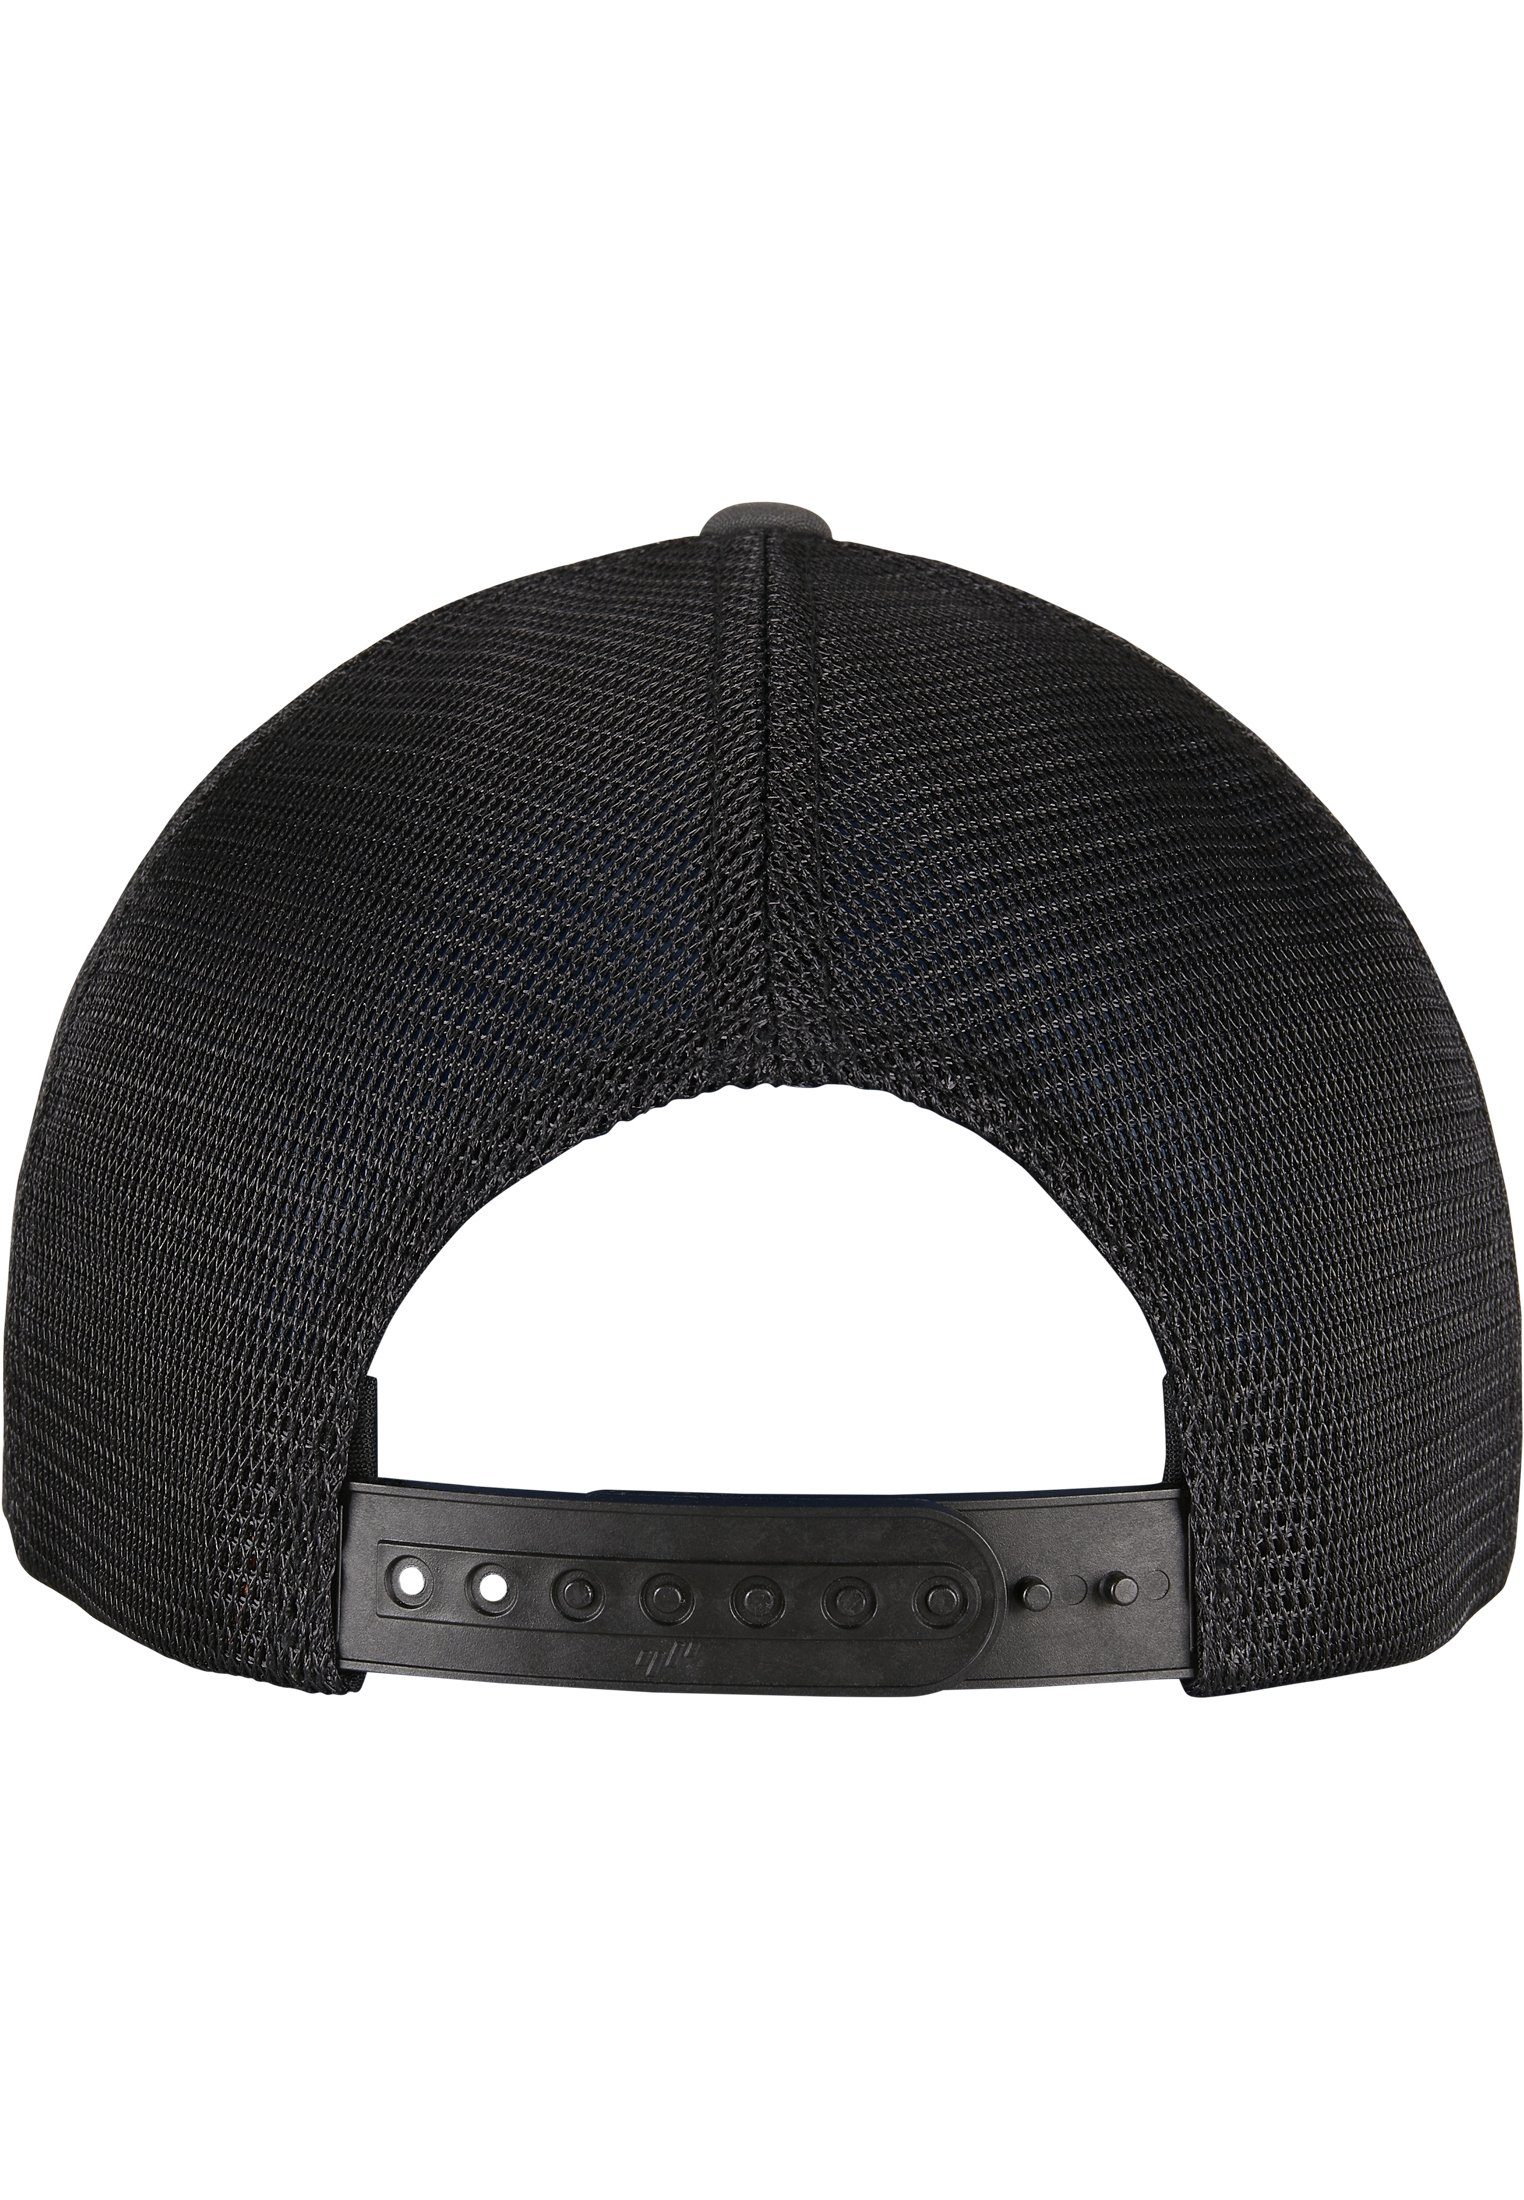 Flexfit Flex Cap Accessoires charcoal/black 2-Tone Omnimesh Cap 360°